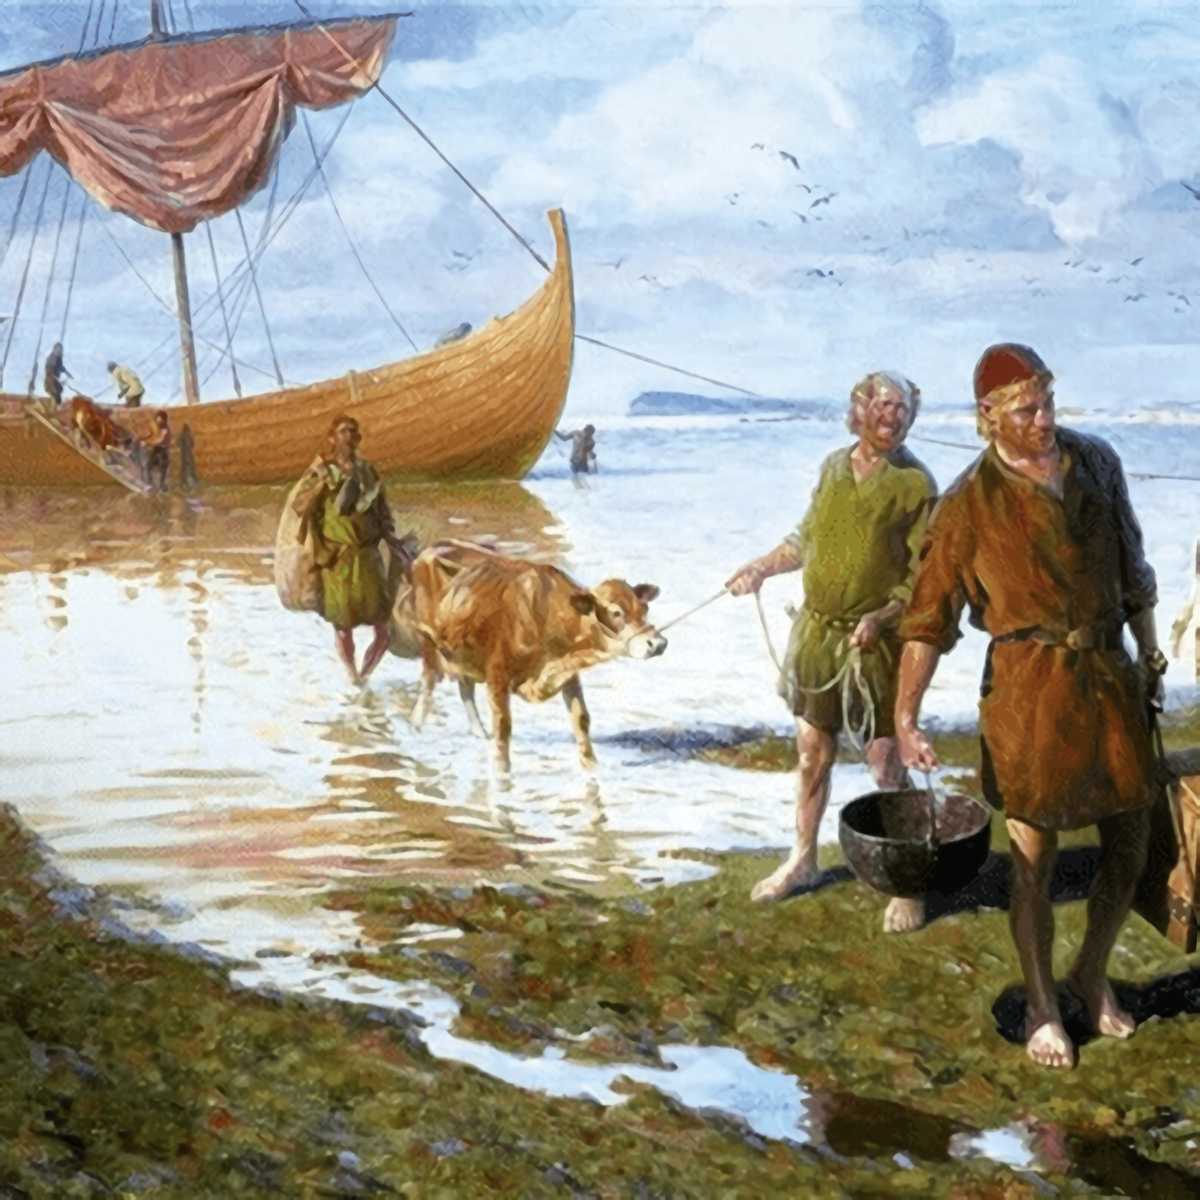 Norse, İskandinav, Nordik ve Viking arasındaki fark nedir?